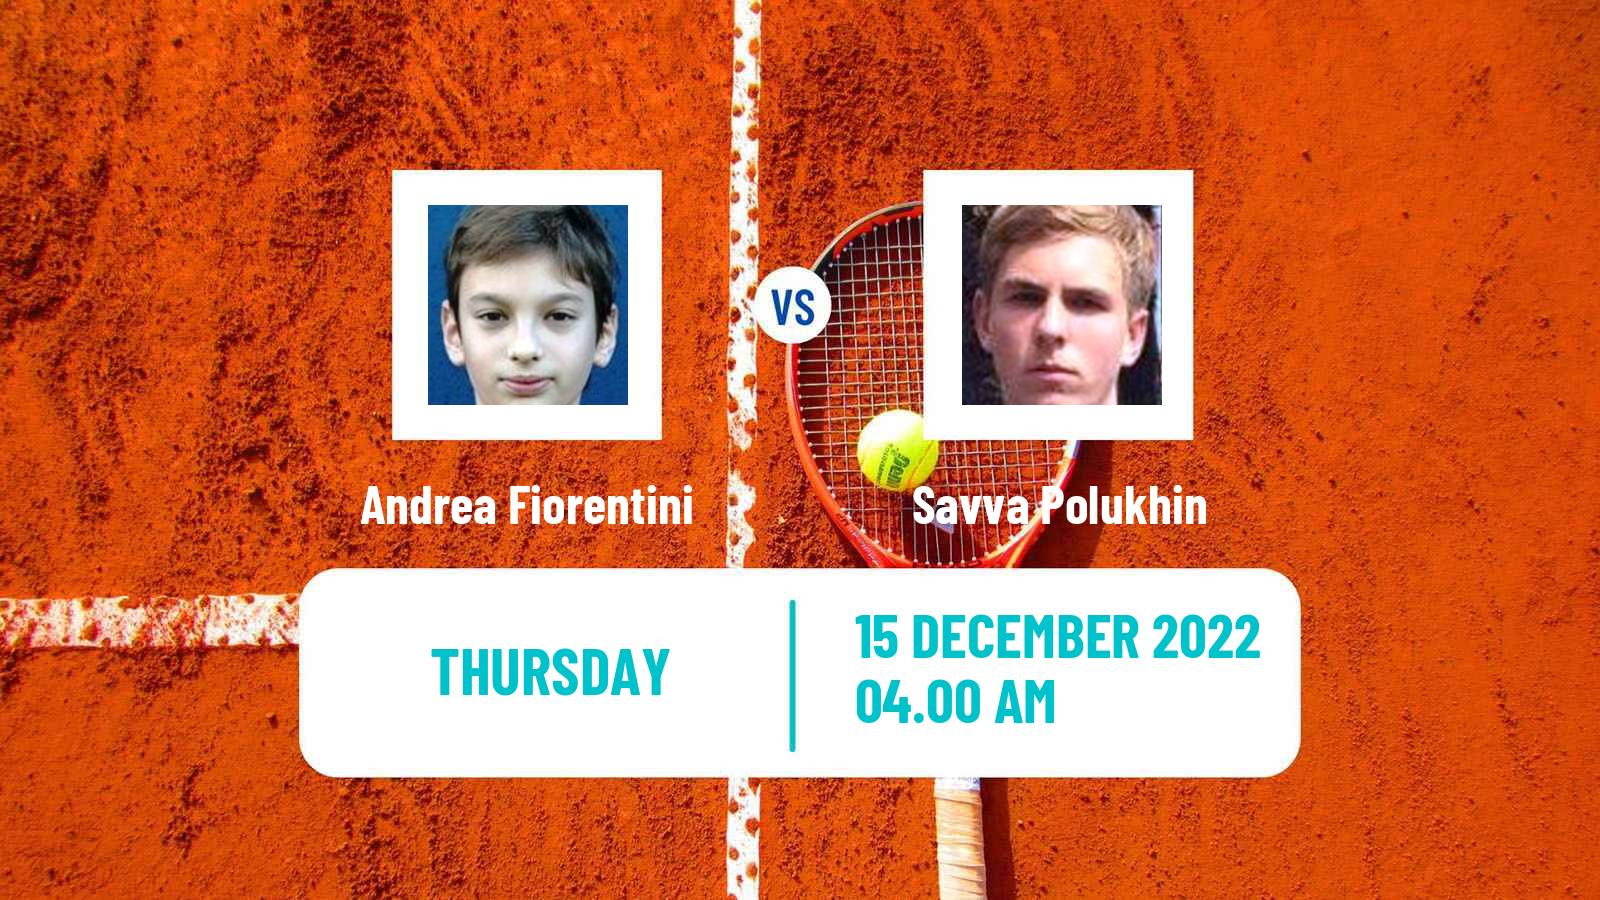 Tennis ITF Tournaments Andrea Fiorentini - Savva Polukhin